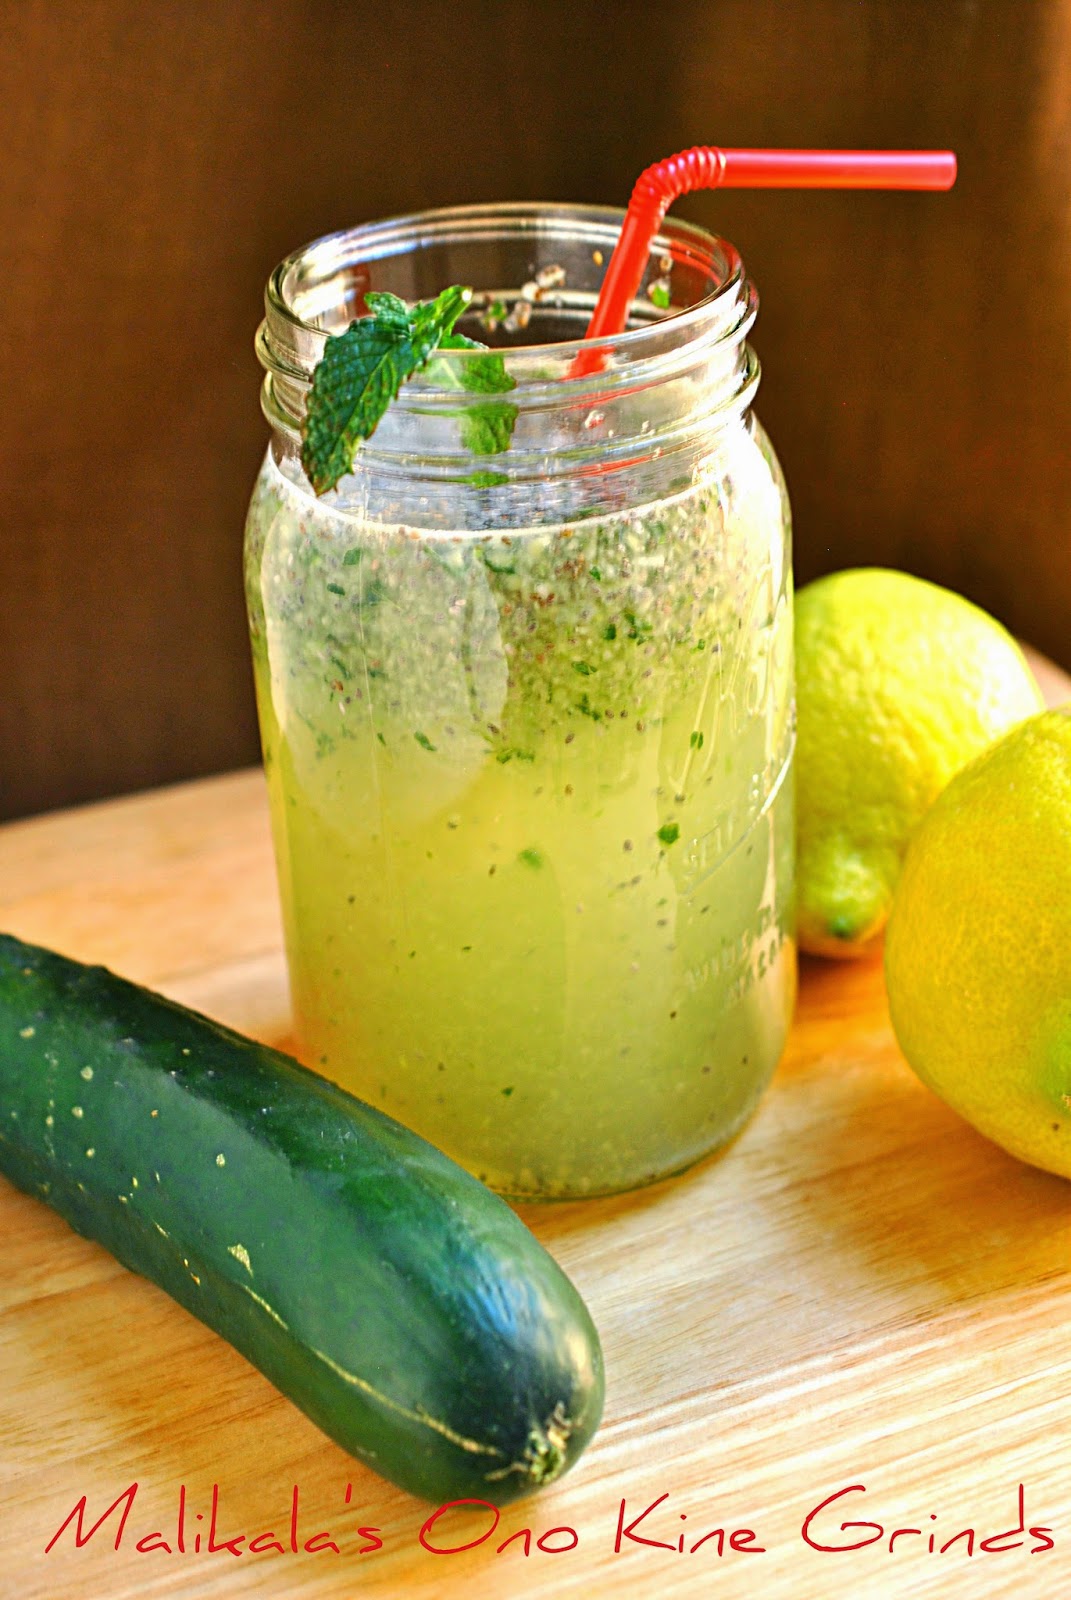 Malikala&amp;#39;s Ono Kine Grinds: Cucumber Mint Lemonade with Chia seeds